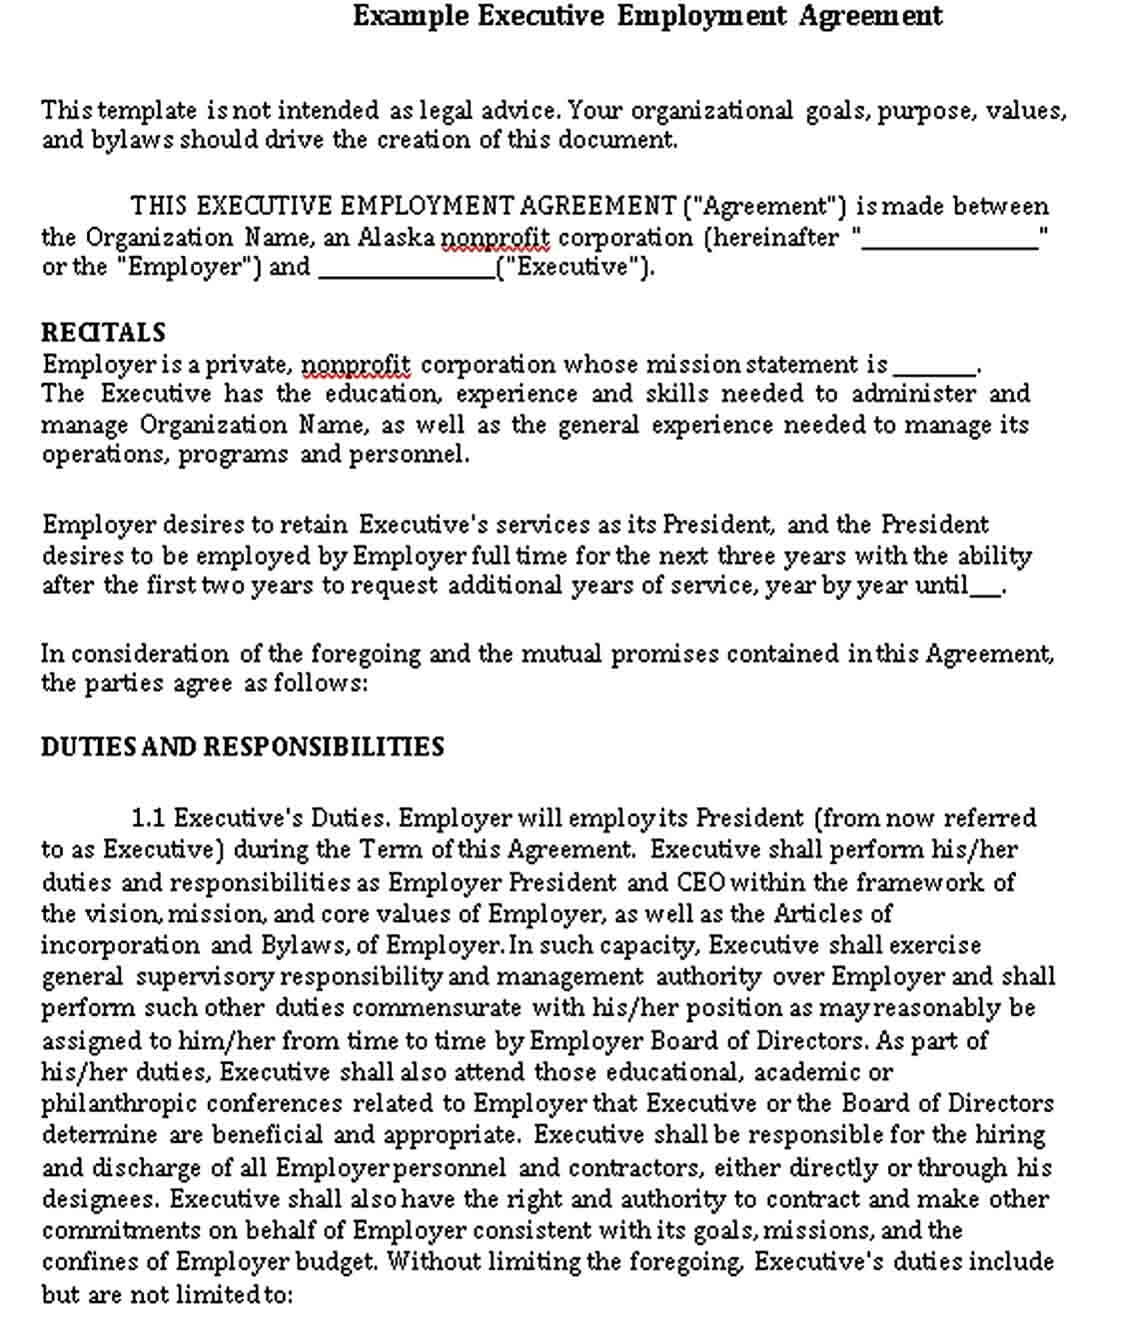 Example of Executive Employee Agreement